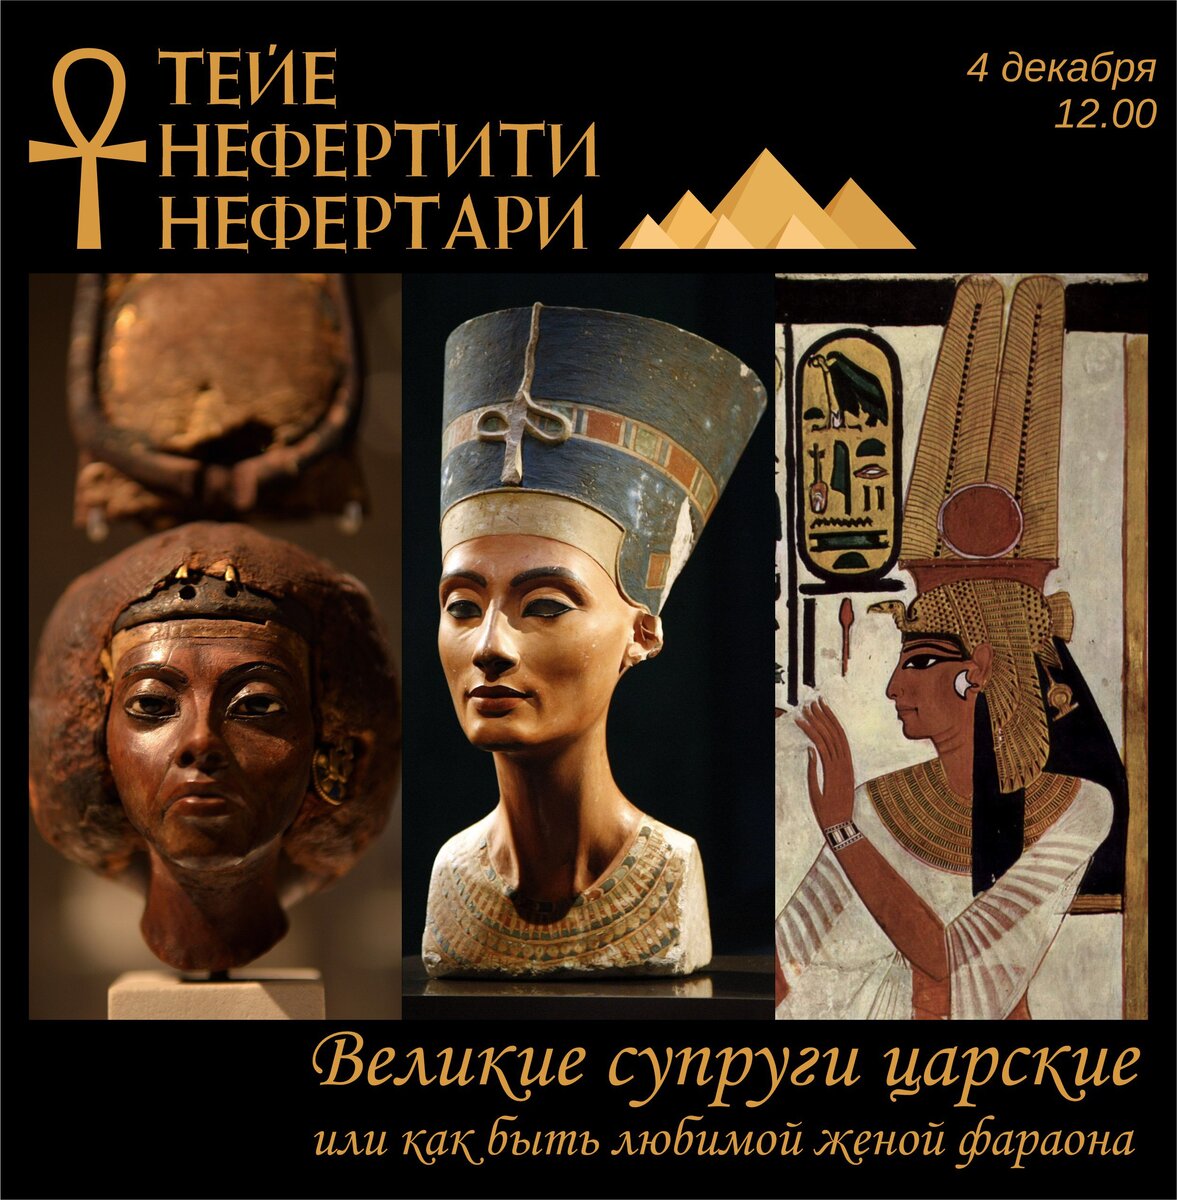 Жены великих мужей. Нефертари и Нефертити. Царица Египта Нефертари. Нефертити Великая царица (древний Египет).